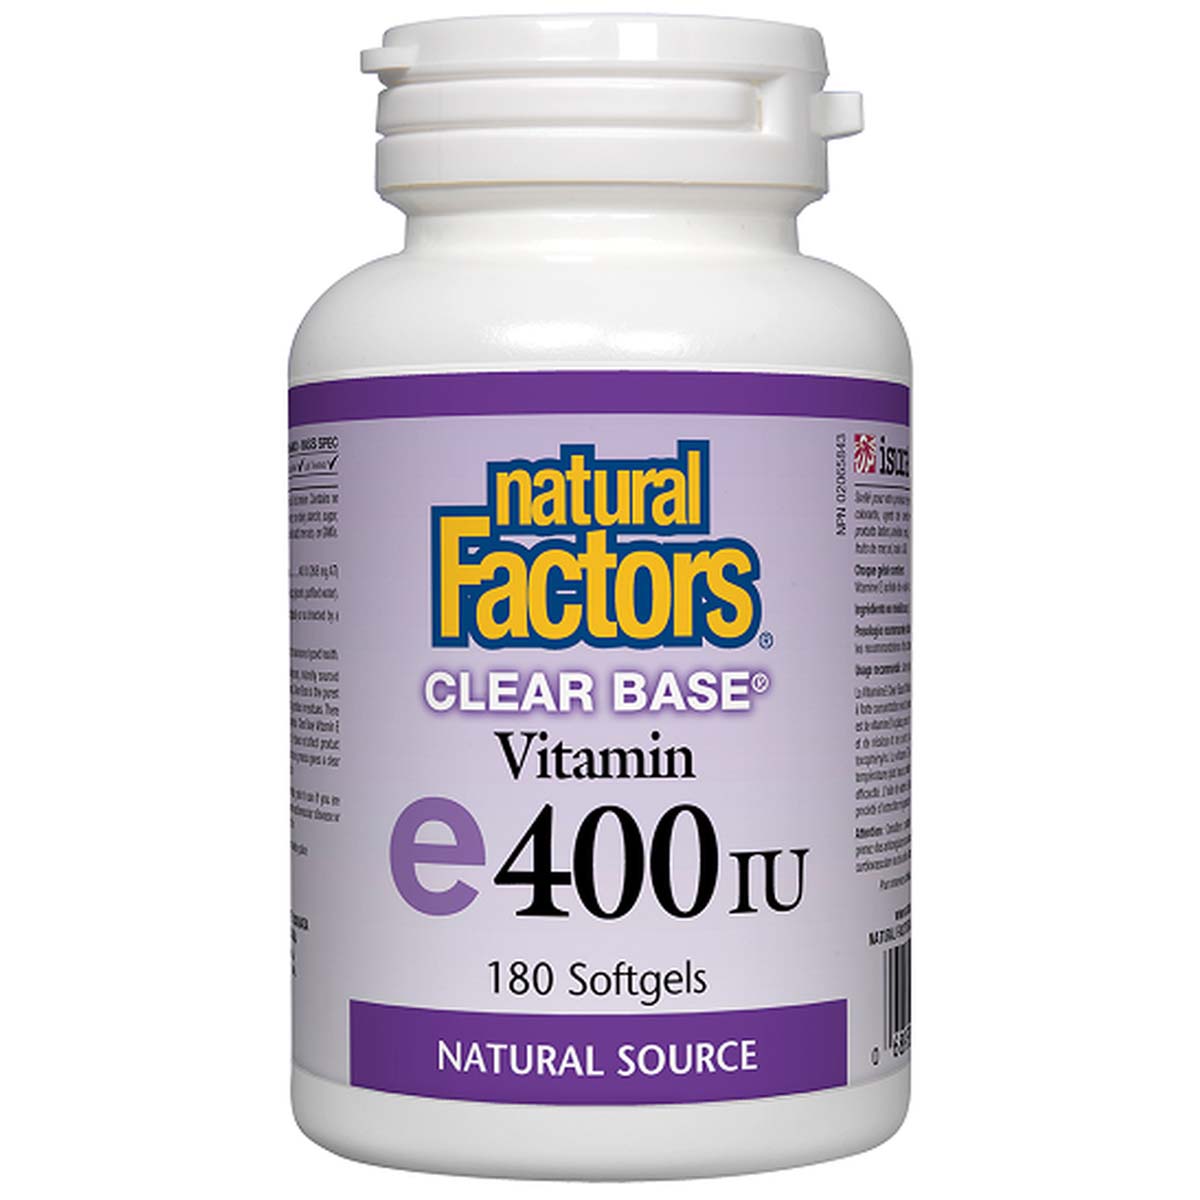 Natural Factors Clear Base Vitamin E, 400 IU, 180 Softgels